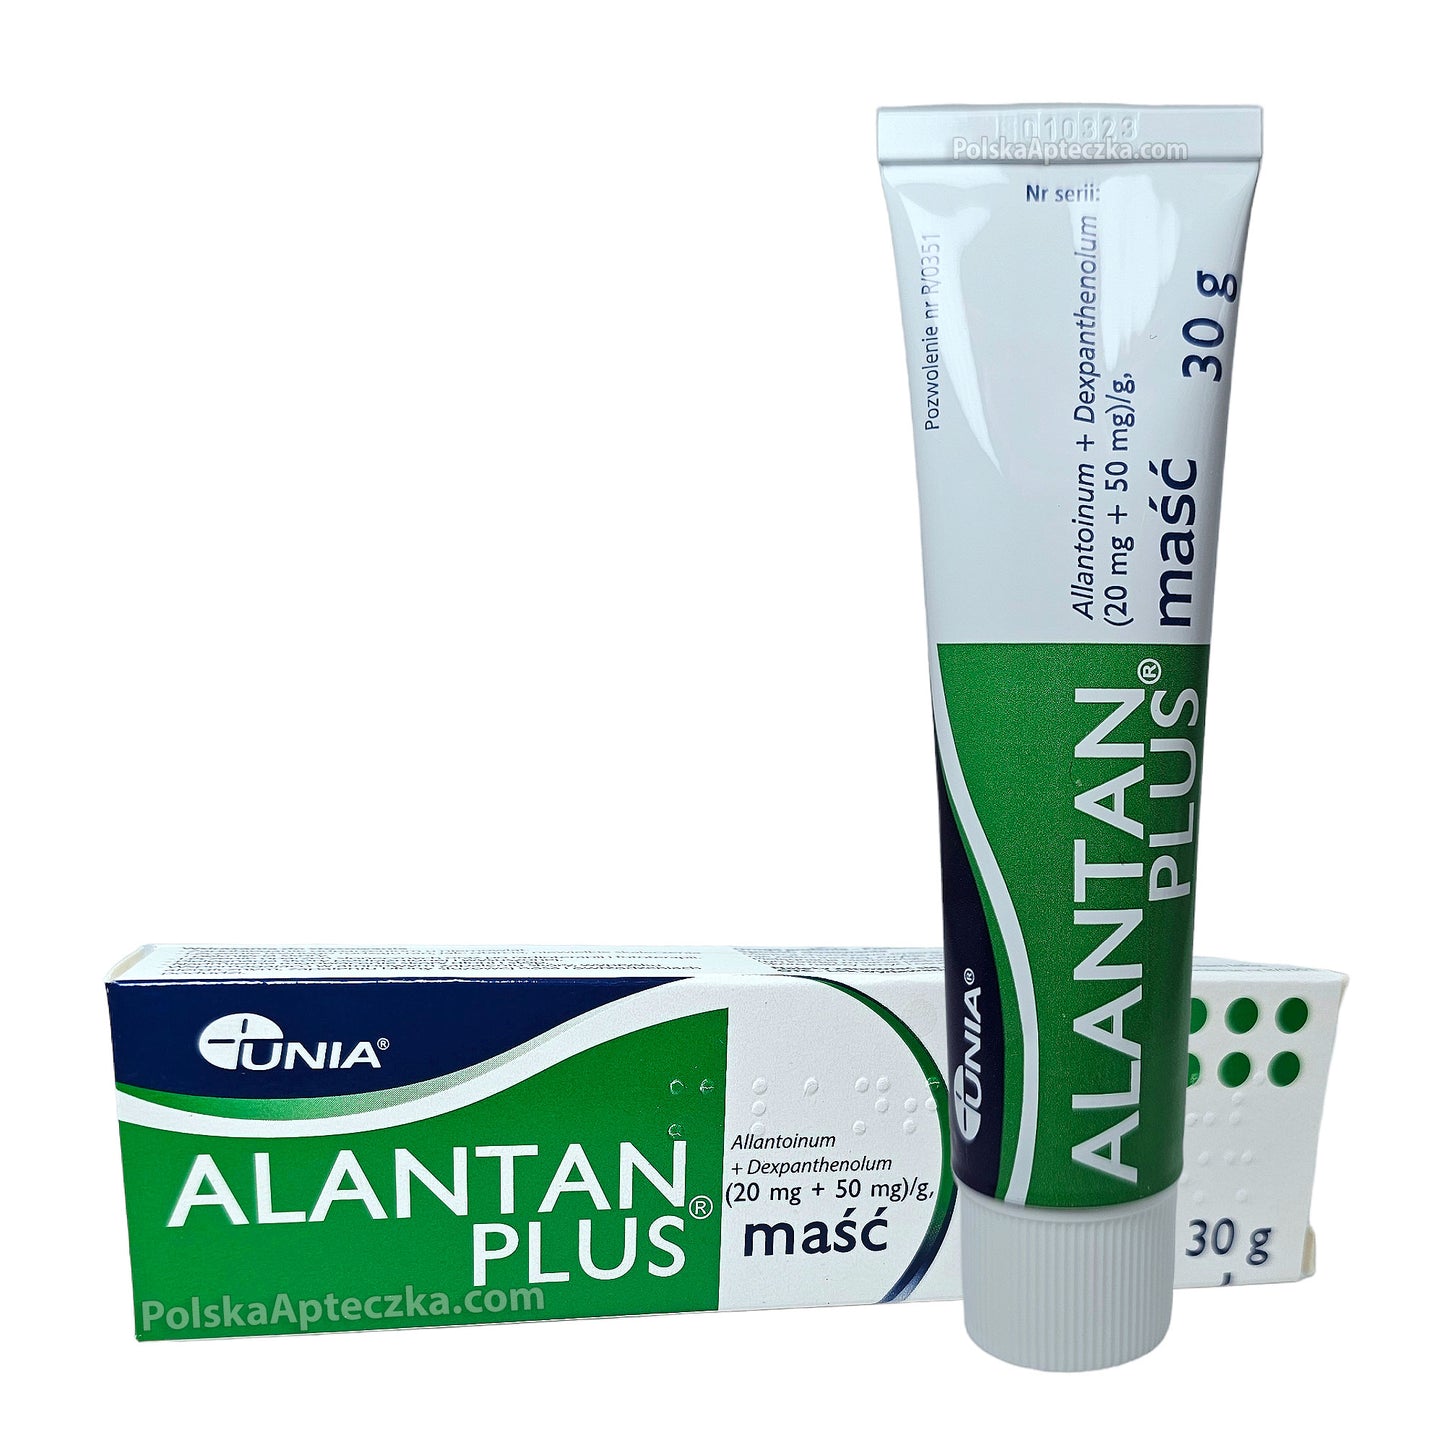 Alantan Plus masc 30 g Unia